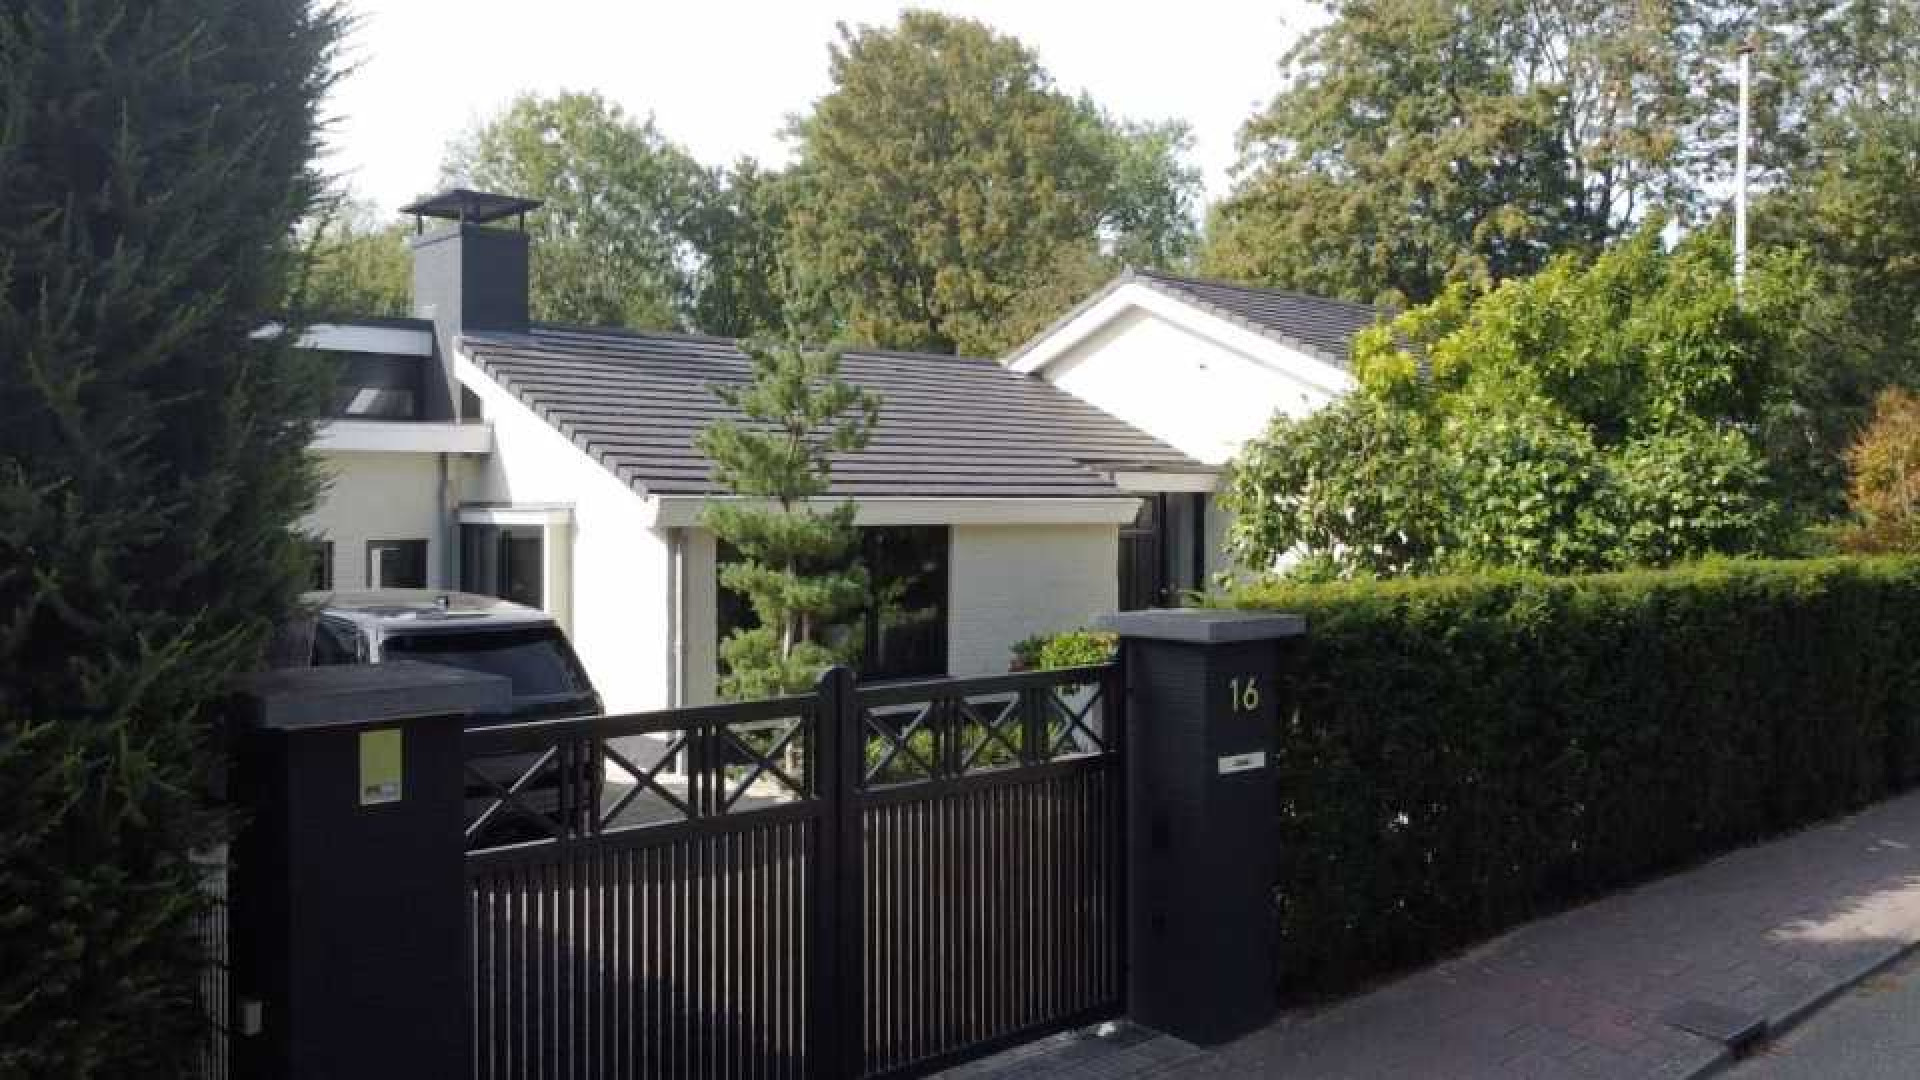 Ronald Koeman verkoopt gisteren zijn miljoenen villa in het Gooi zwaar boven de vraagprijs. Zie foto's 15